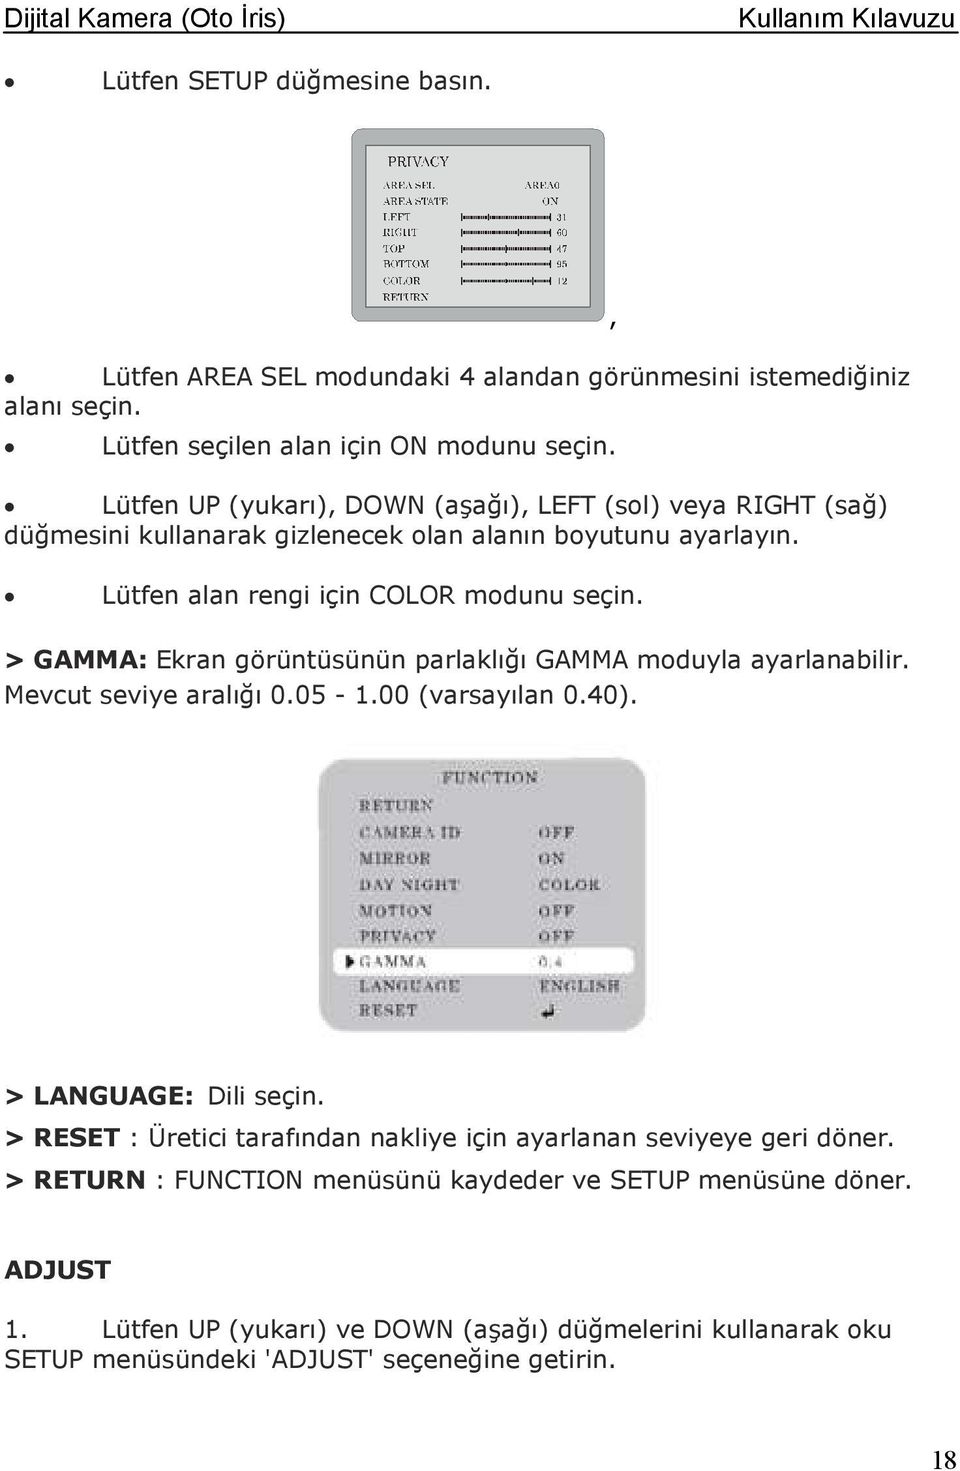 > GAMMA: Ekran görüntüsünün parlaklığı GAMMA moduyla ayarlanabilir. Mevcut seviye aralığı 0.05-1.00 (varsayılan 0.40)., > LANGUAGE: Dili seçin.